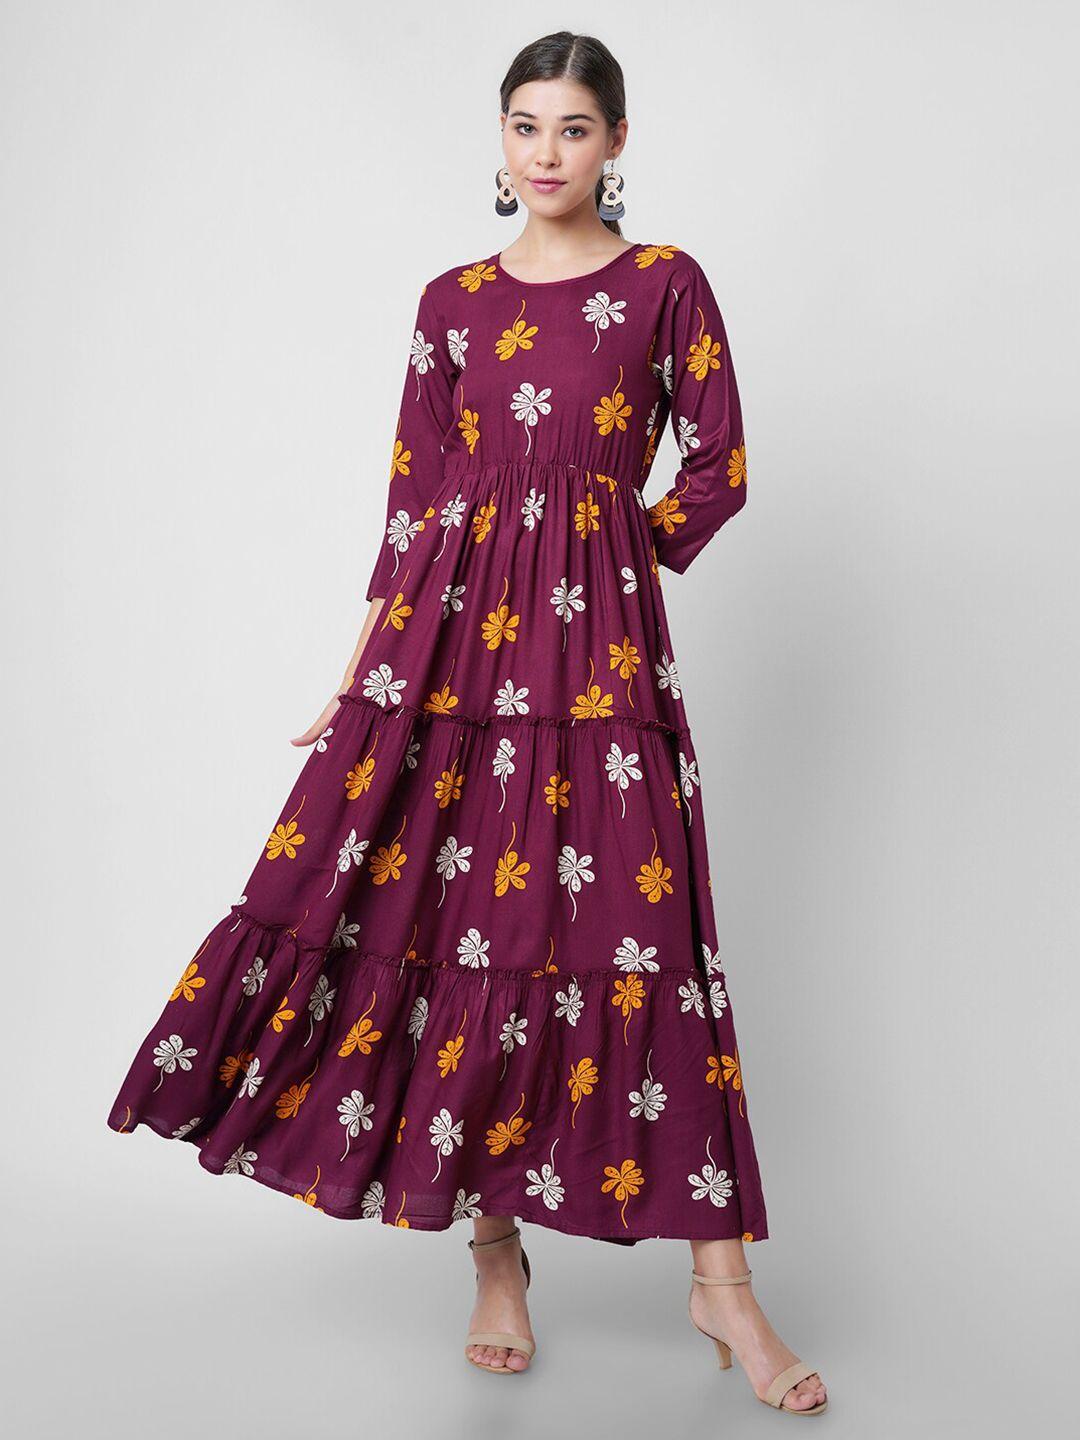 dressar maroon floral maxi maxi dress